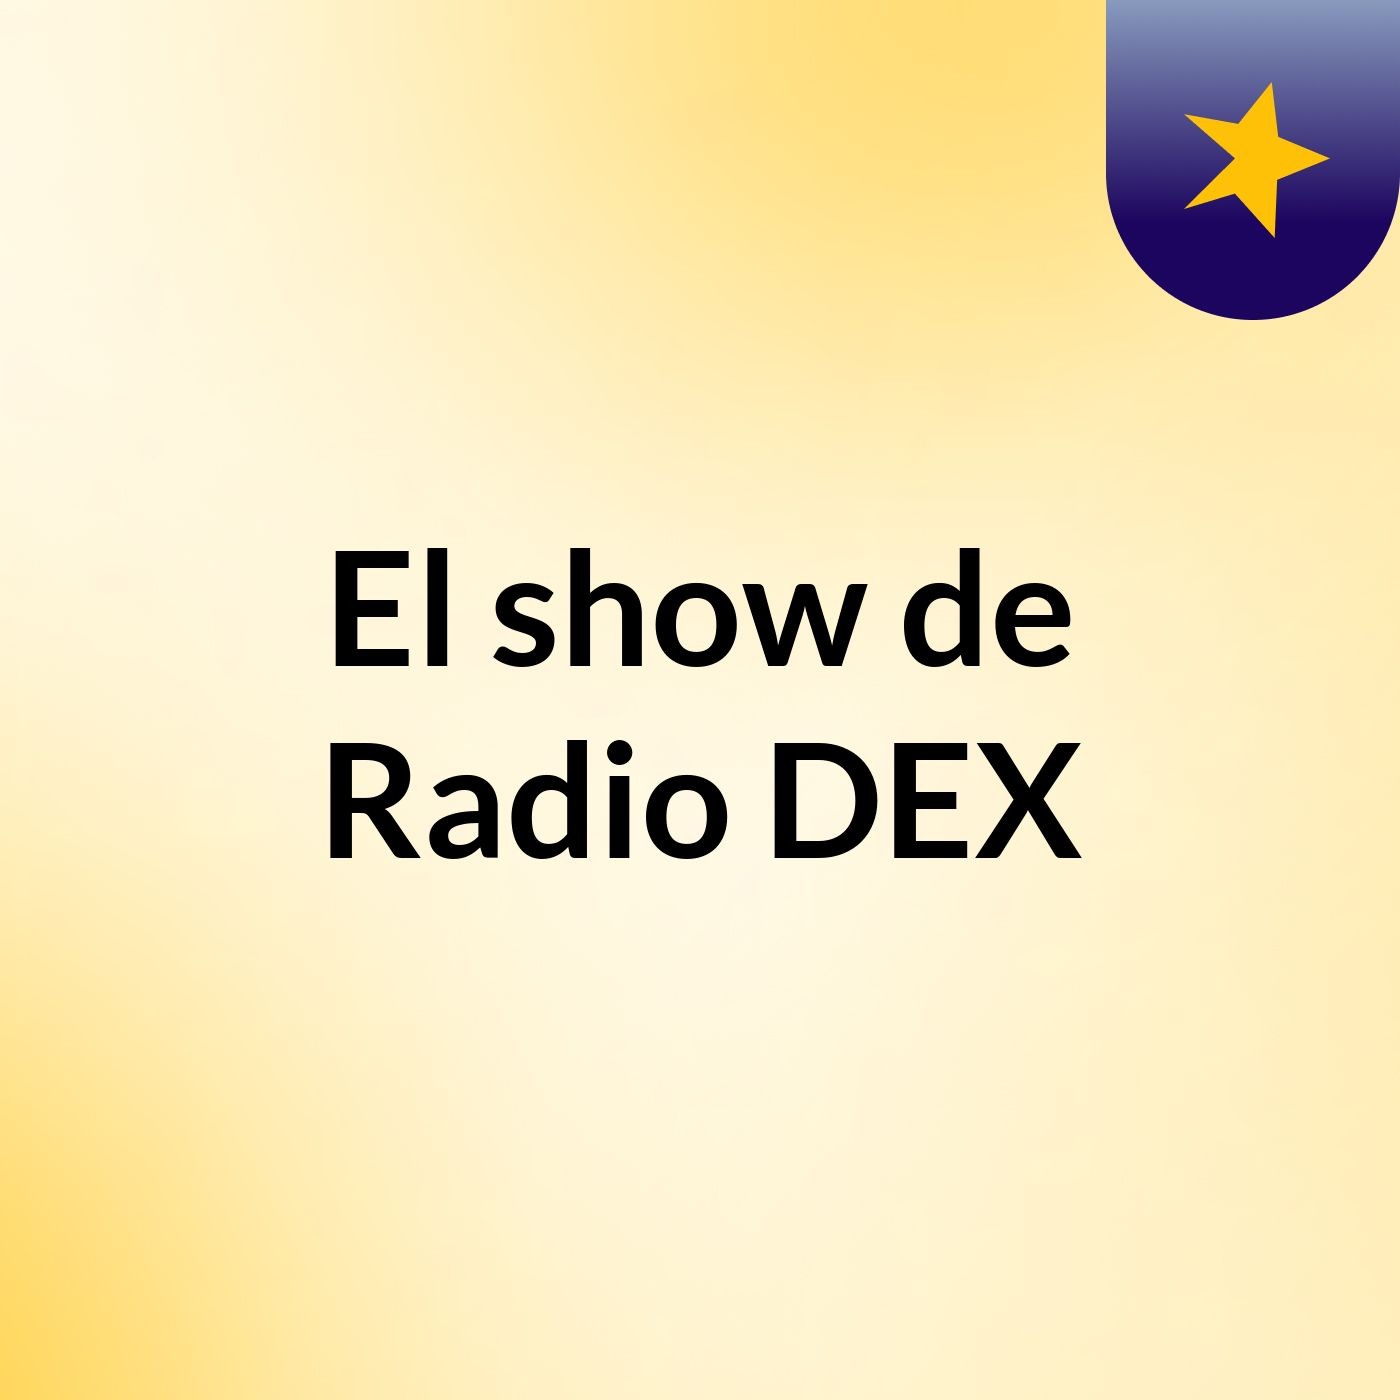 El show de Radio DEX